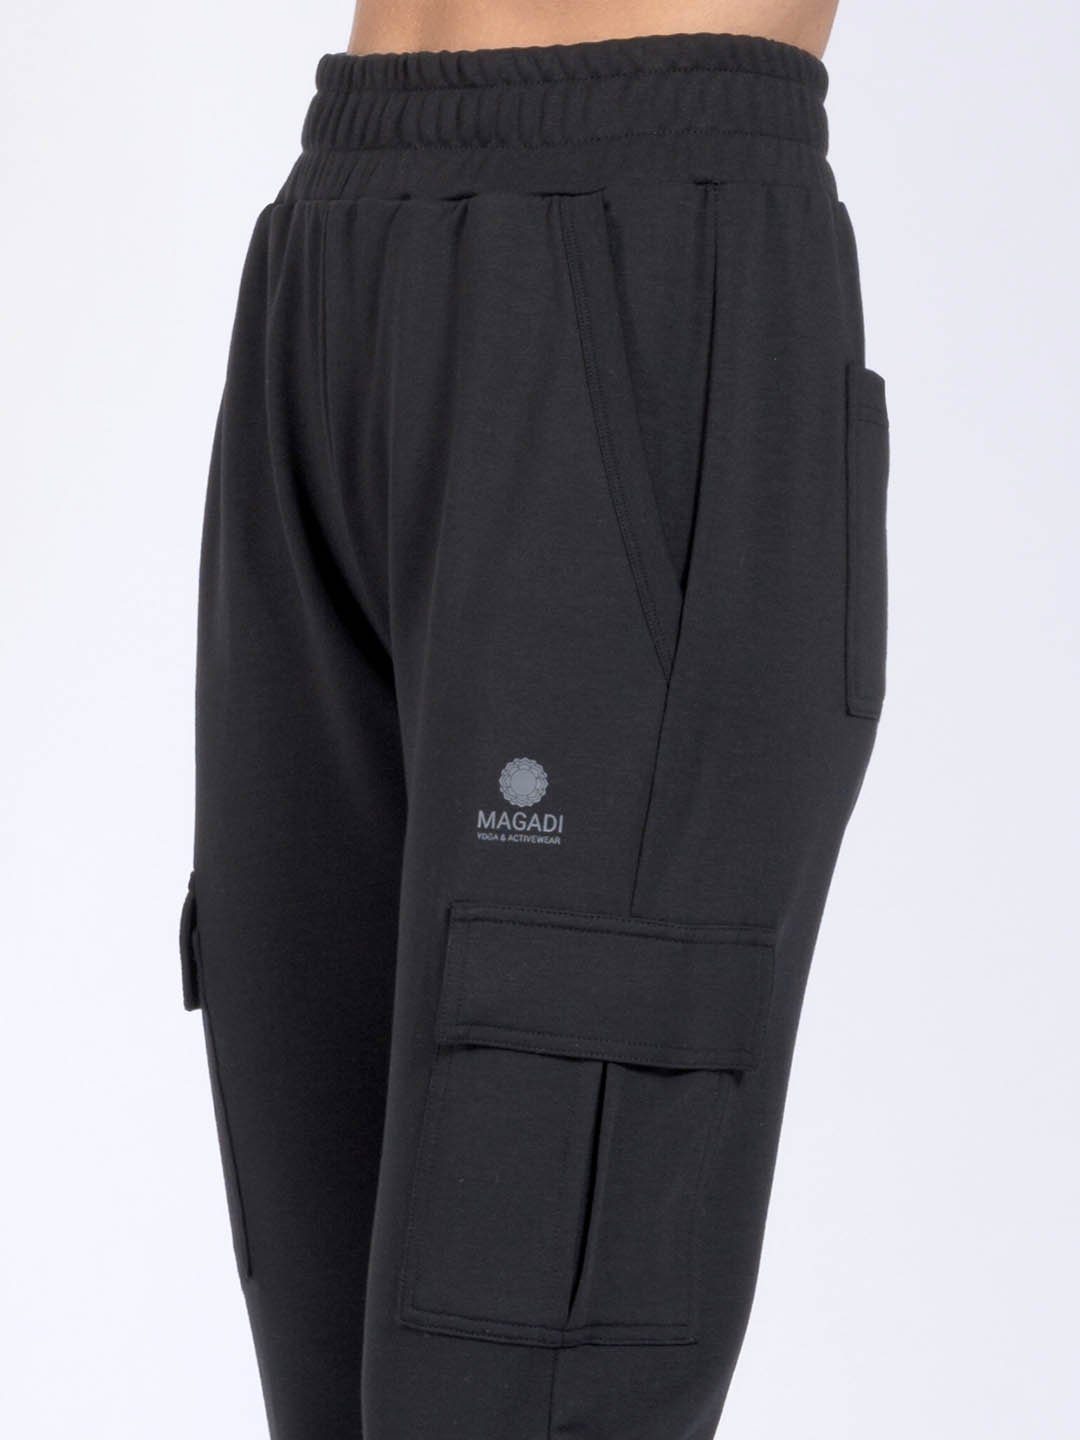 Naturmaterial Yogahose schwarz aus Lucy hautsympathischem Cargotaschen Magadi mit